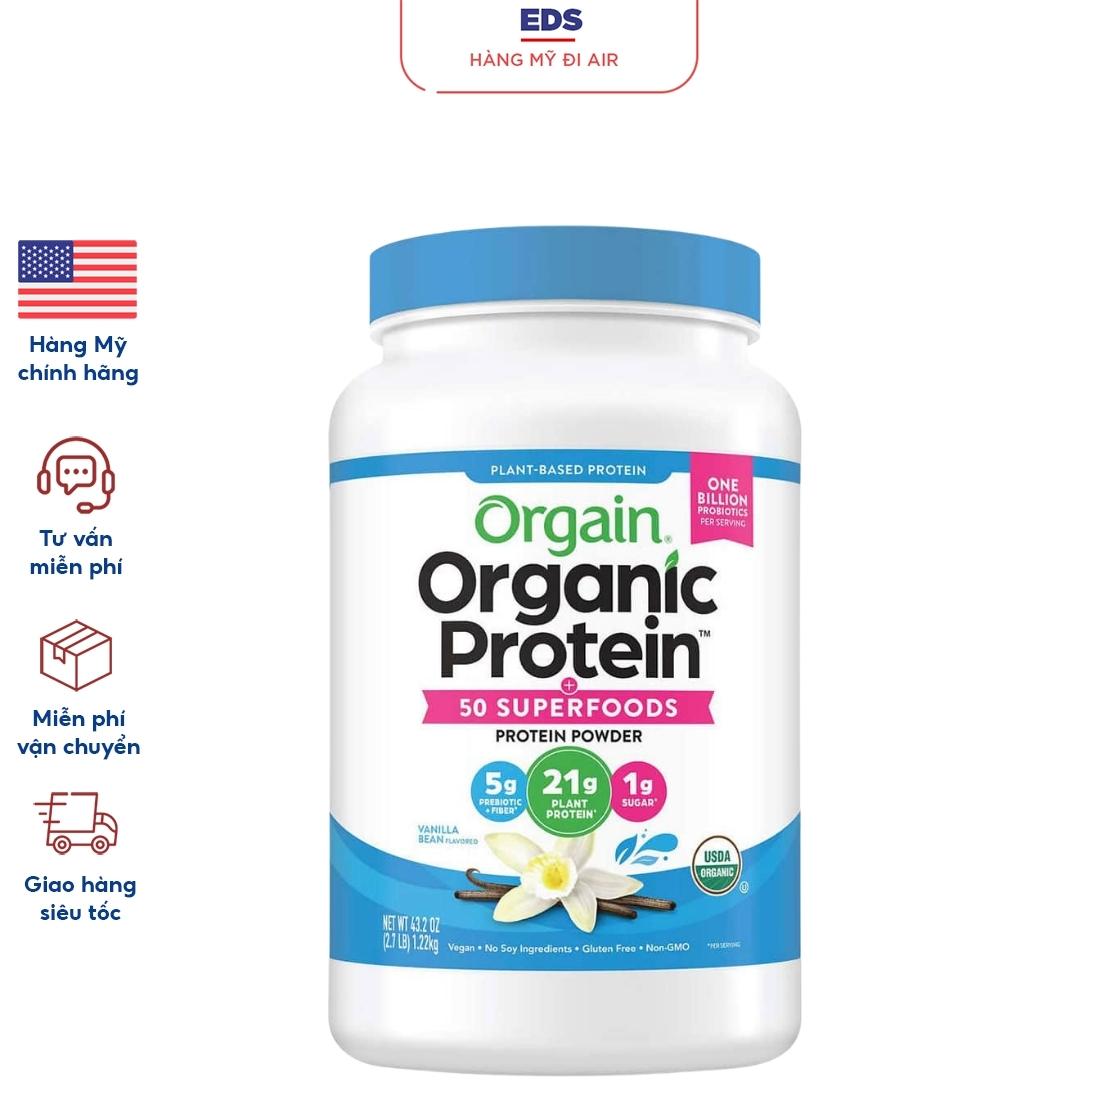 Bột protein hữu cơ Orgain Organic Protein - Hộp 1,22kg - EDS Hàng Mỹ thumbnail